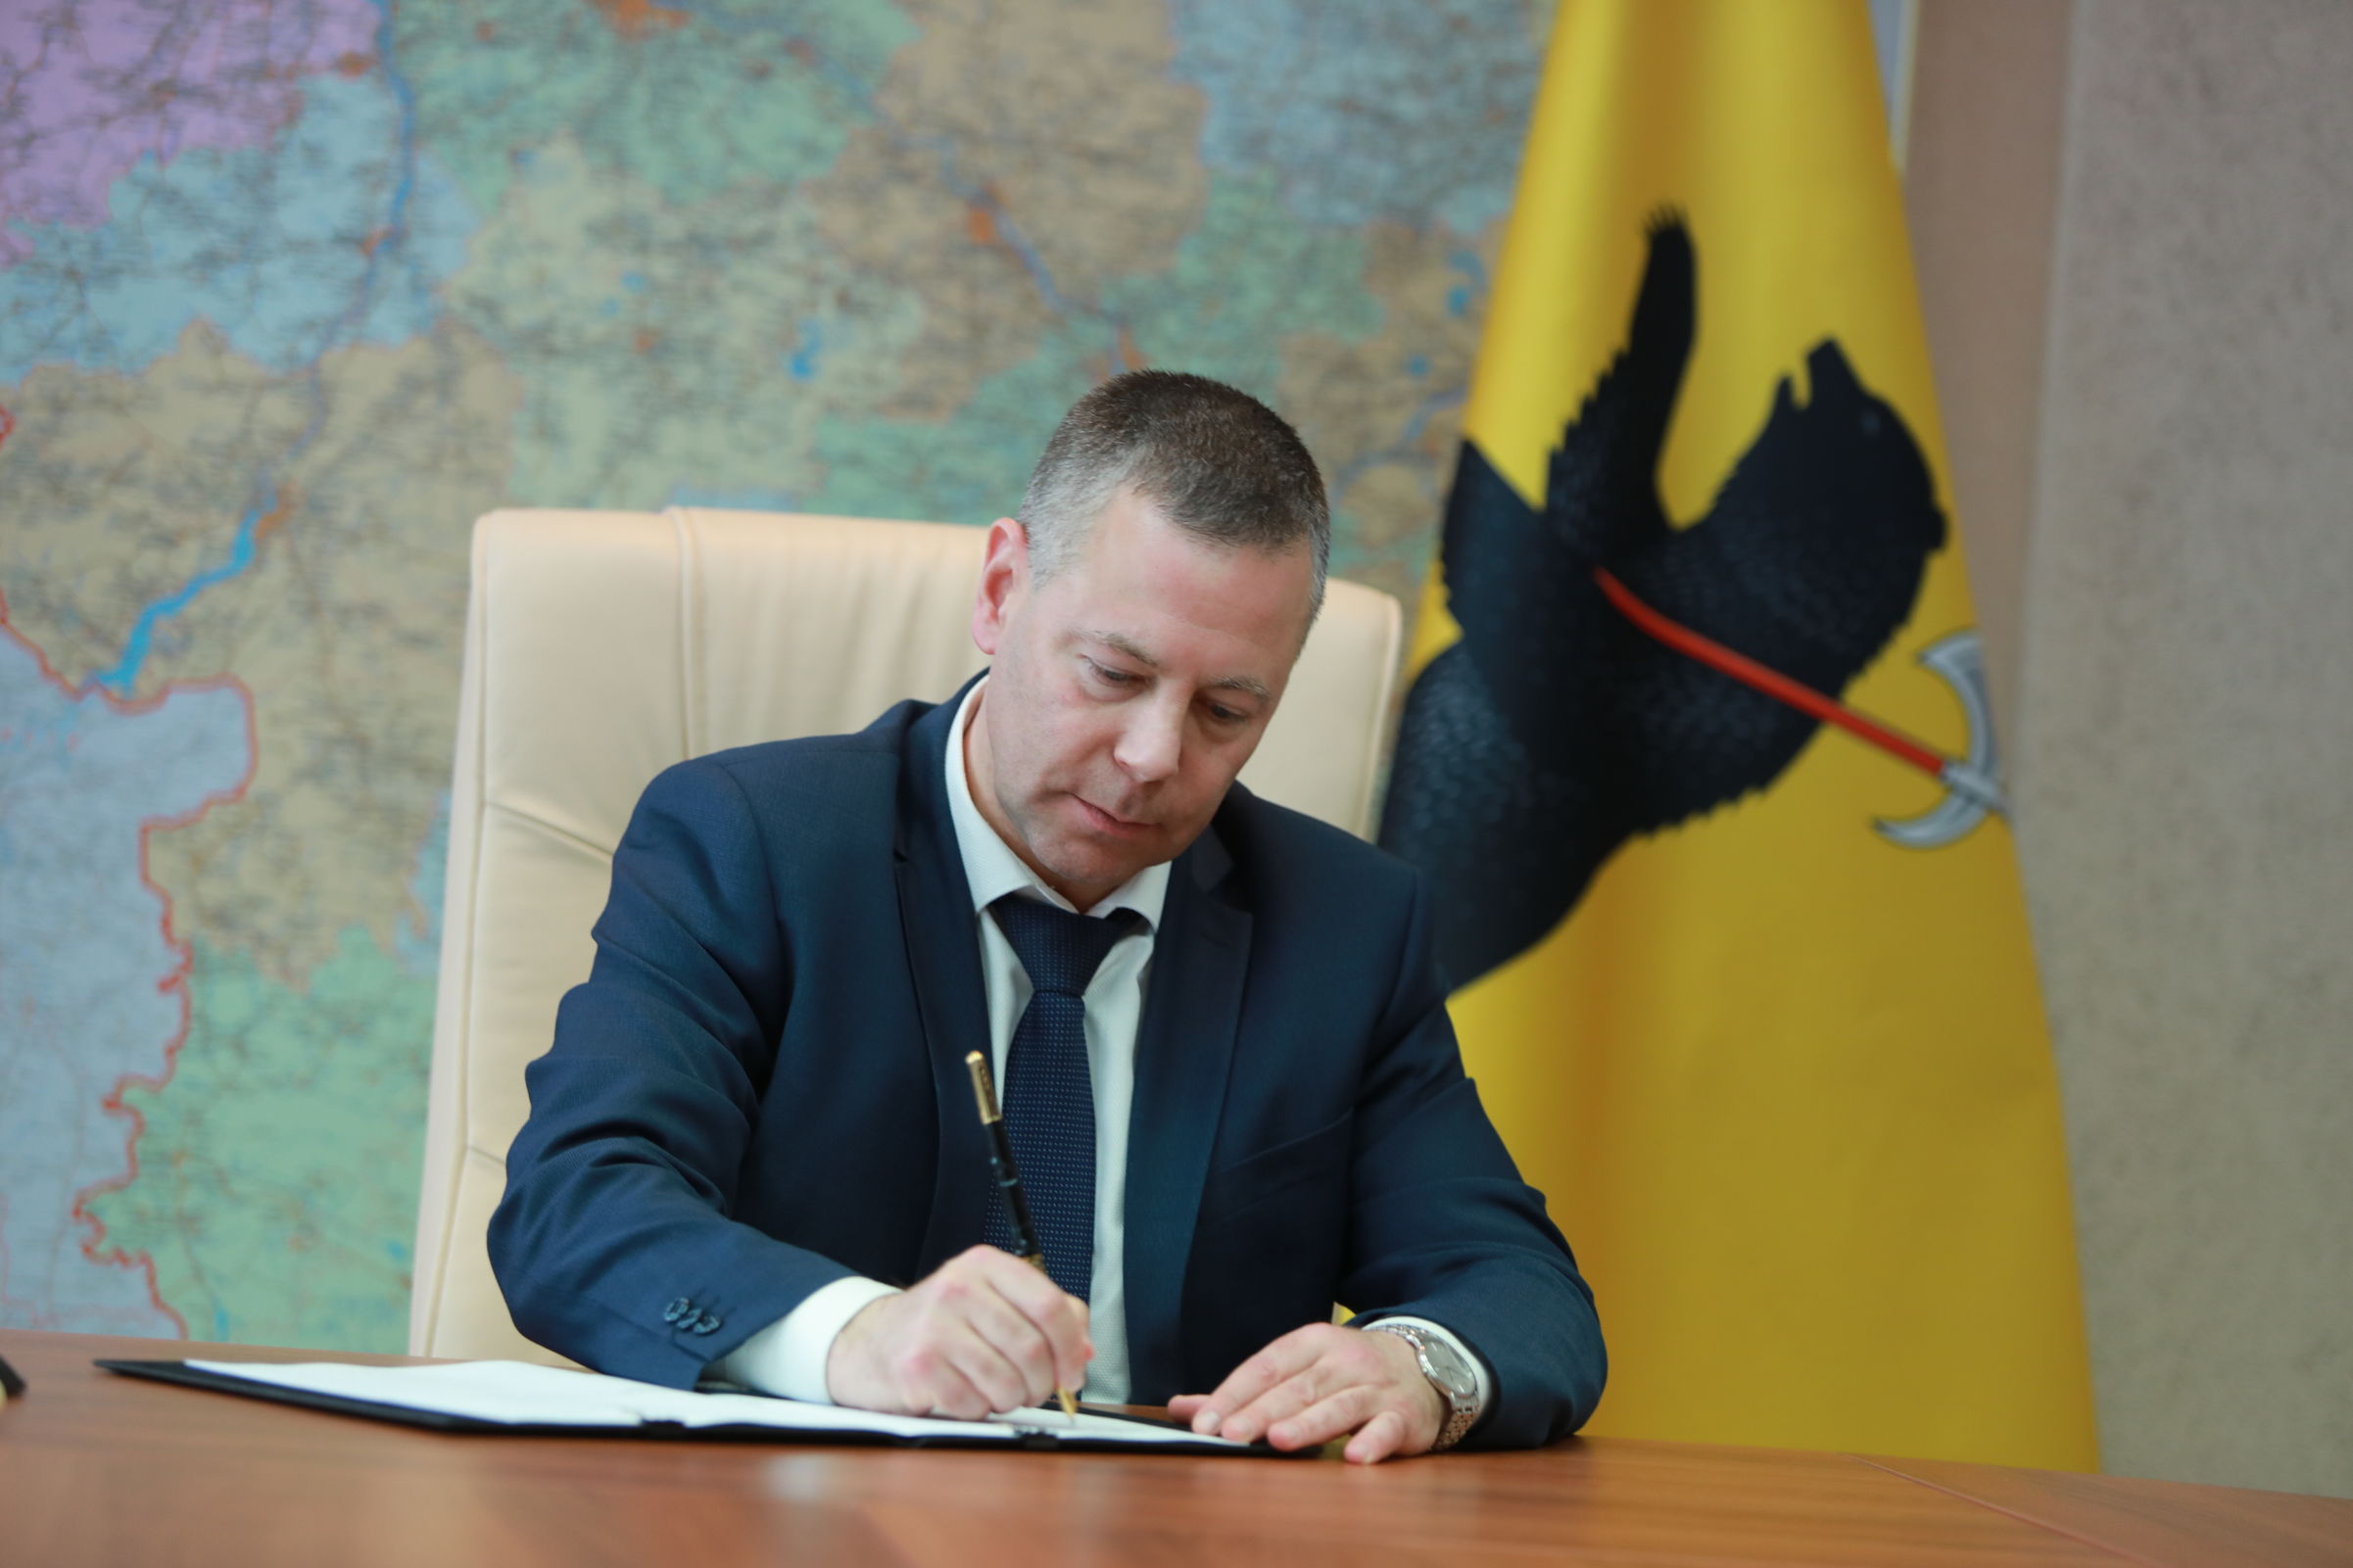 Алексей Миллер и Михаил Евраев подписали соглашение о дополнительной газификации 27 населённых пунктов региона